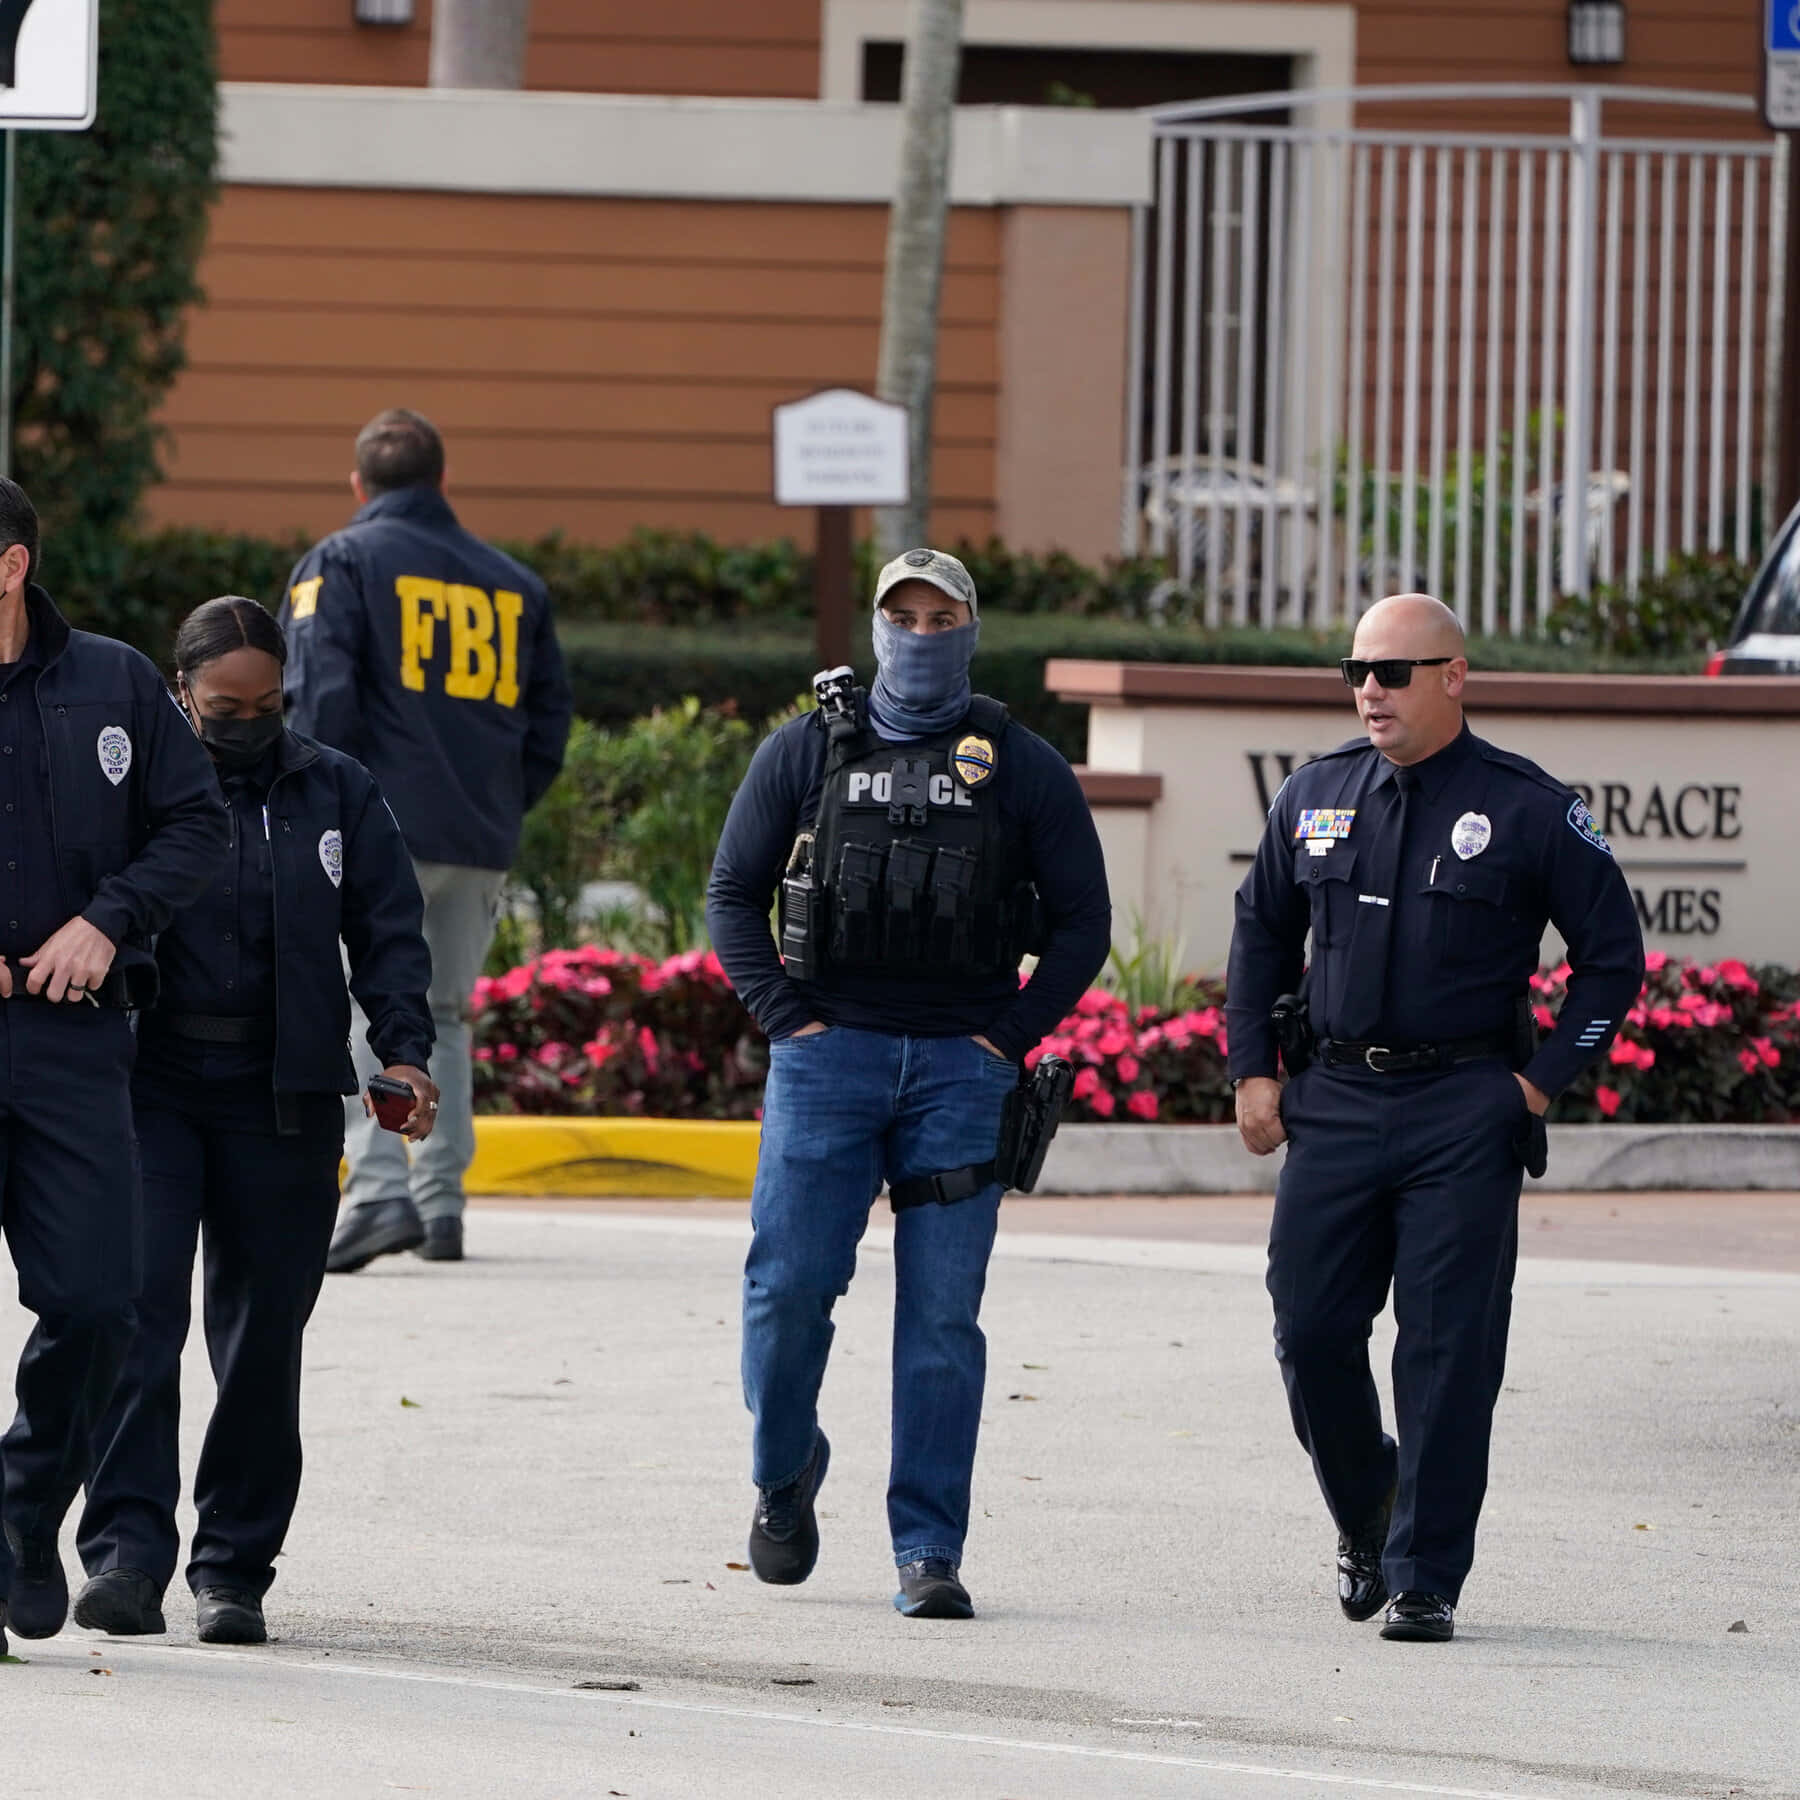 Fbi Agents Walk Down The Street In Uniform